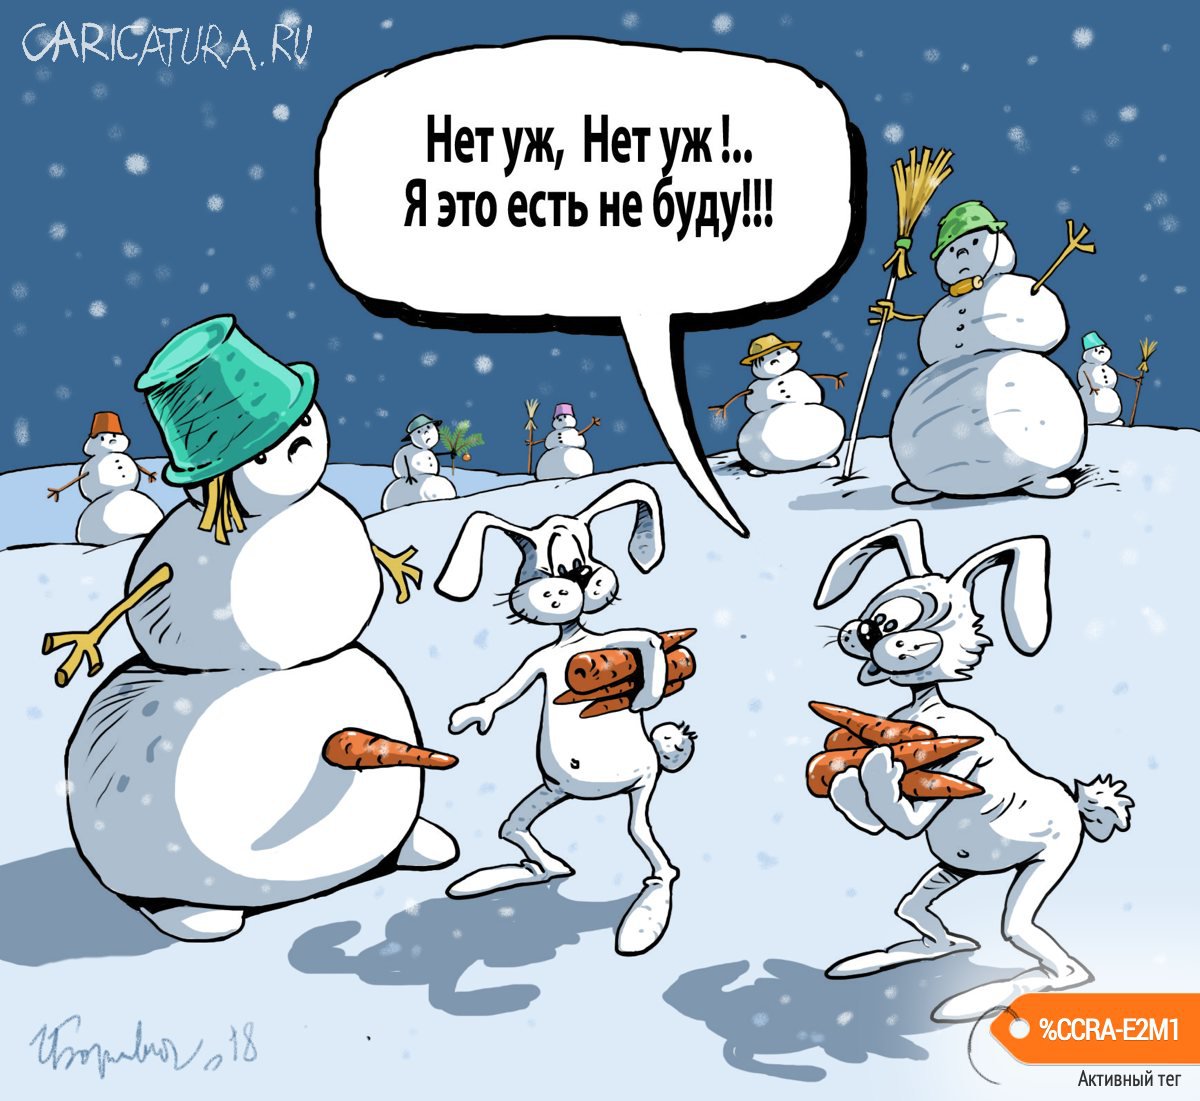 Карикатура "Снеговики и зайцы", Игорь Елистратов